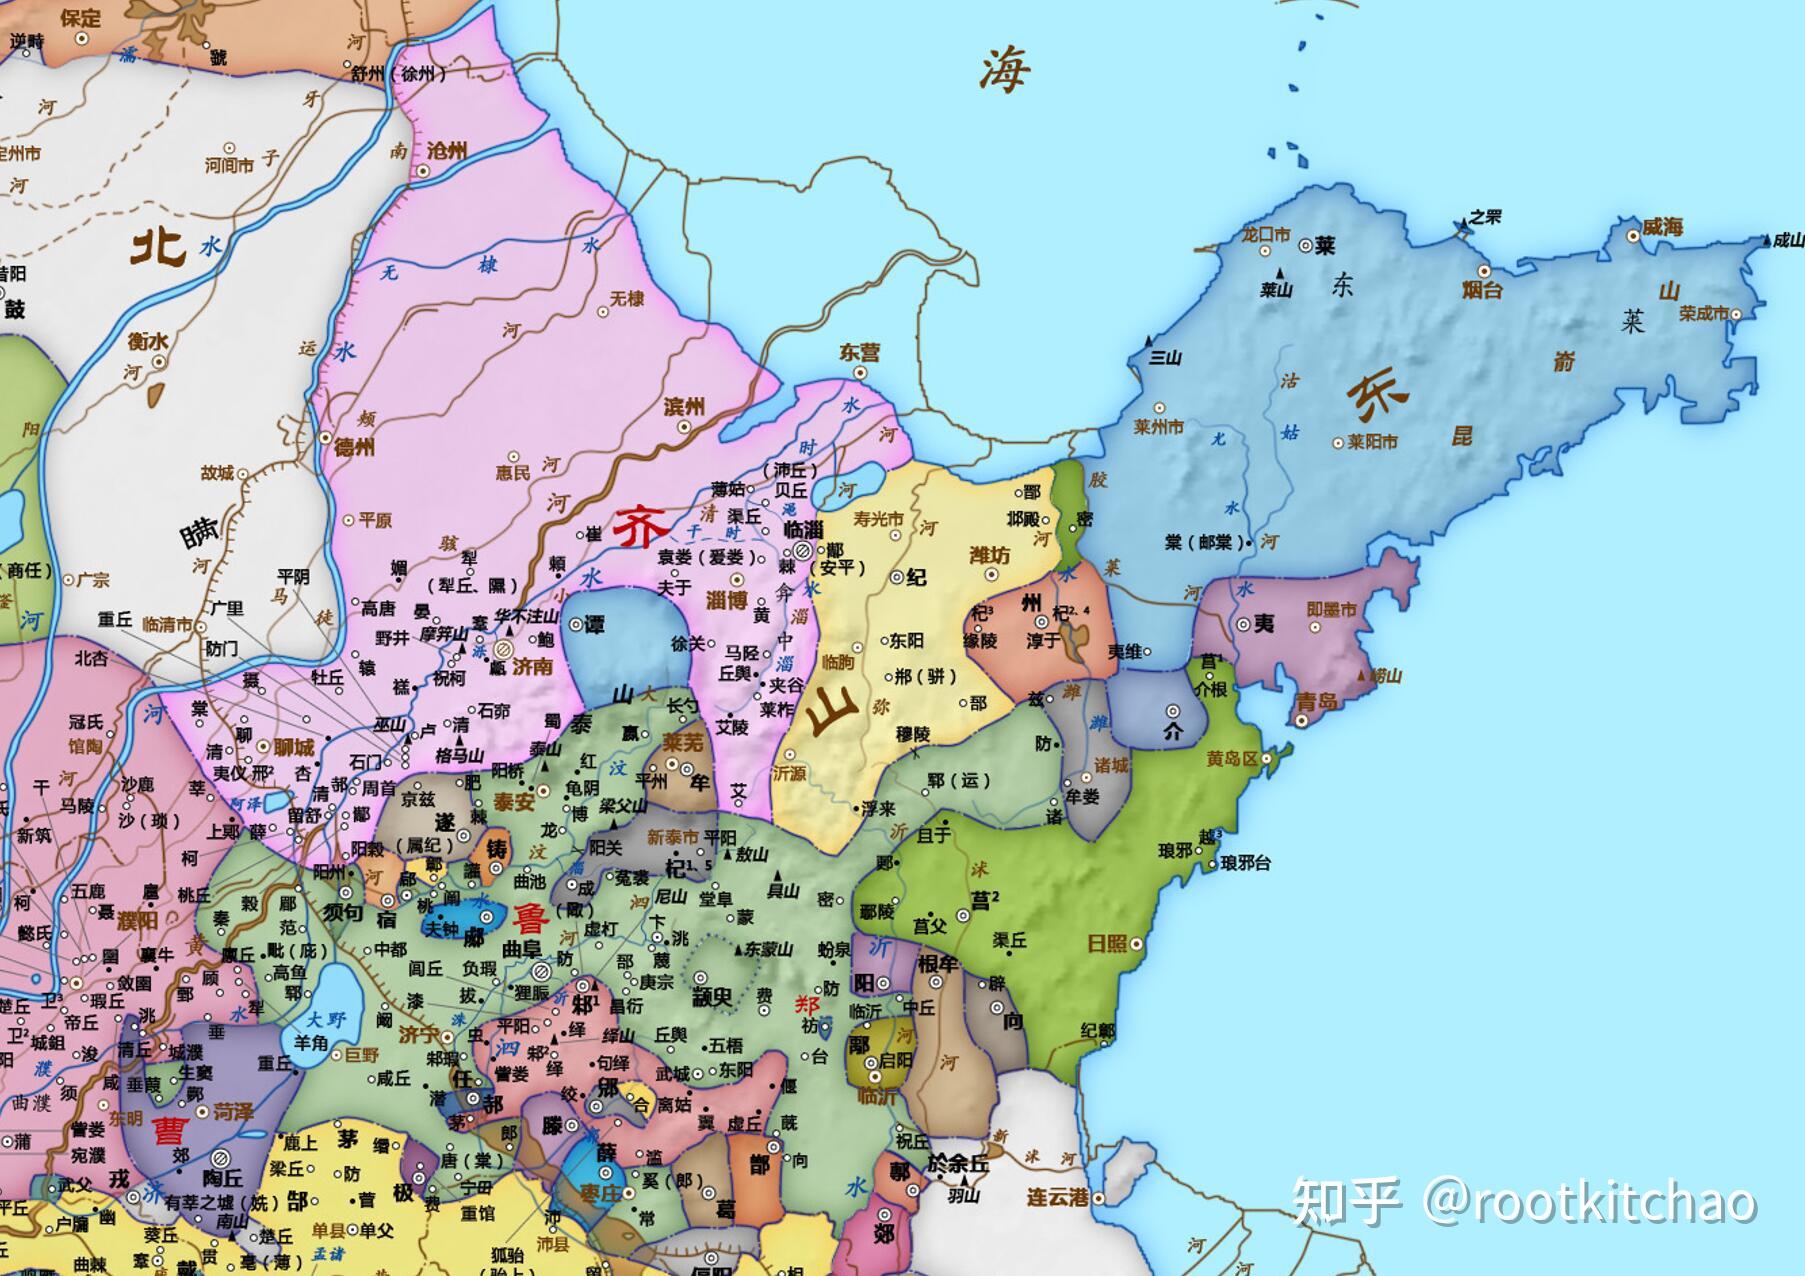 齐国和鲁国地图图片